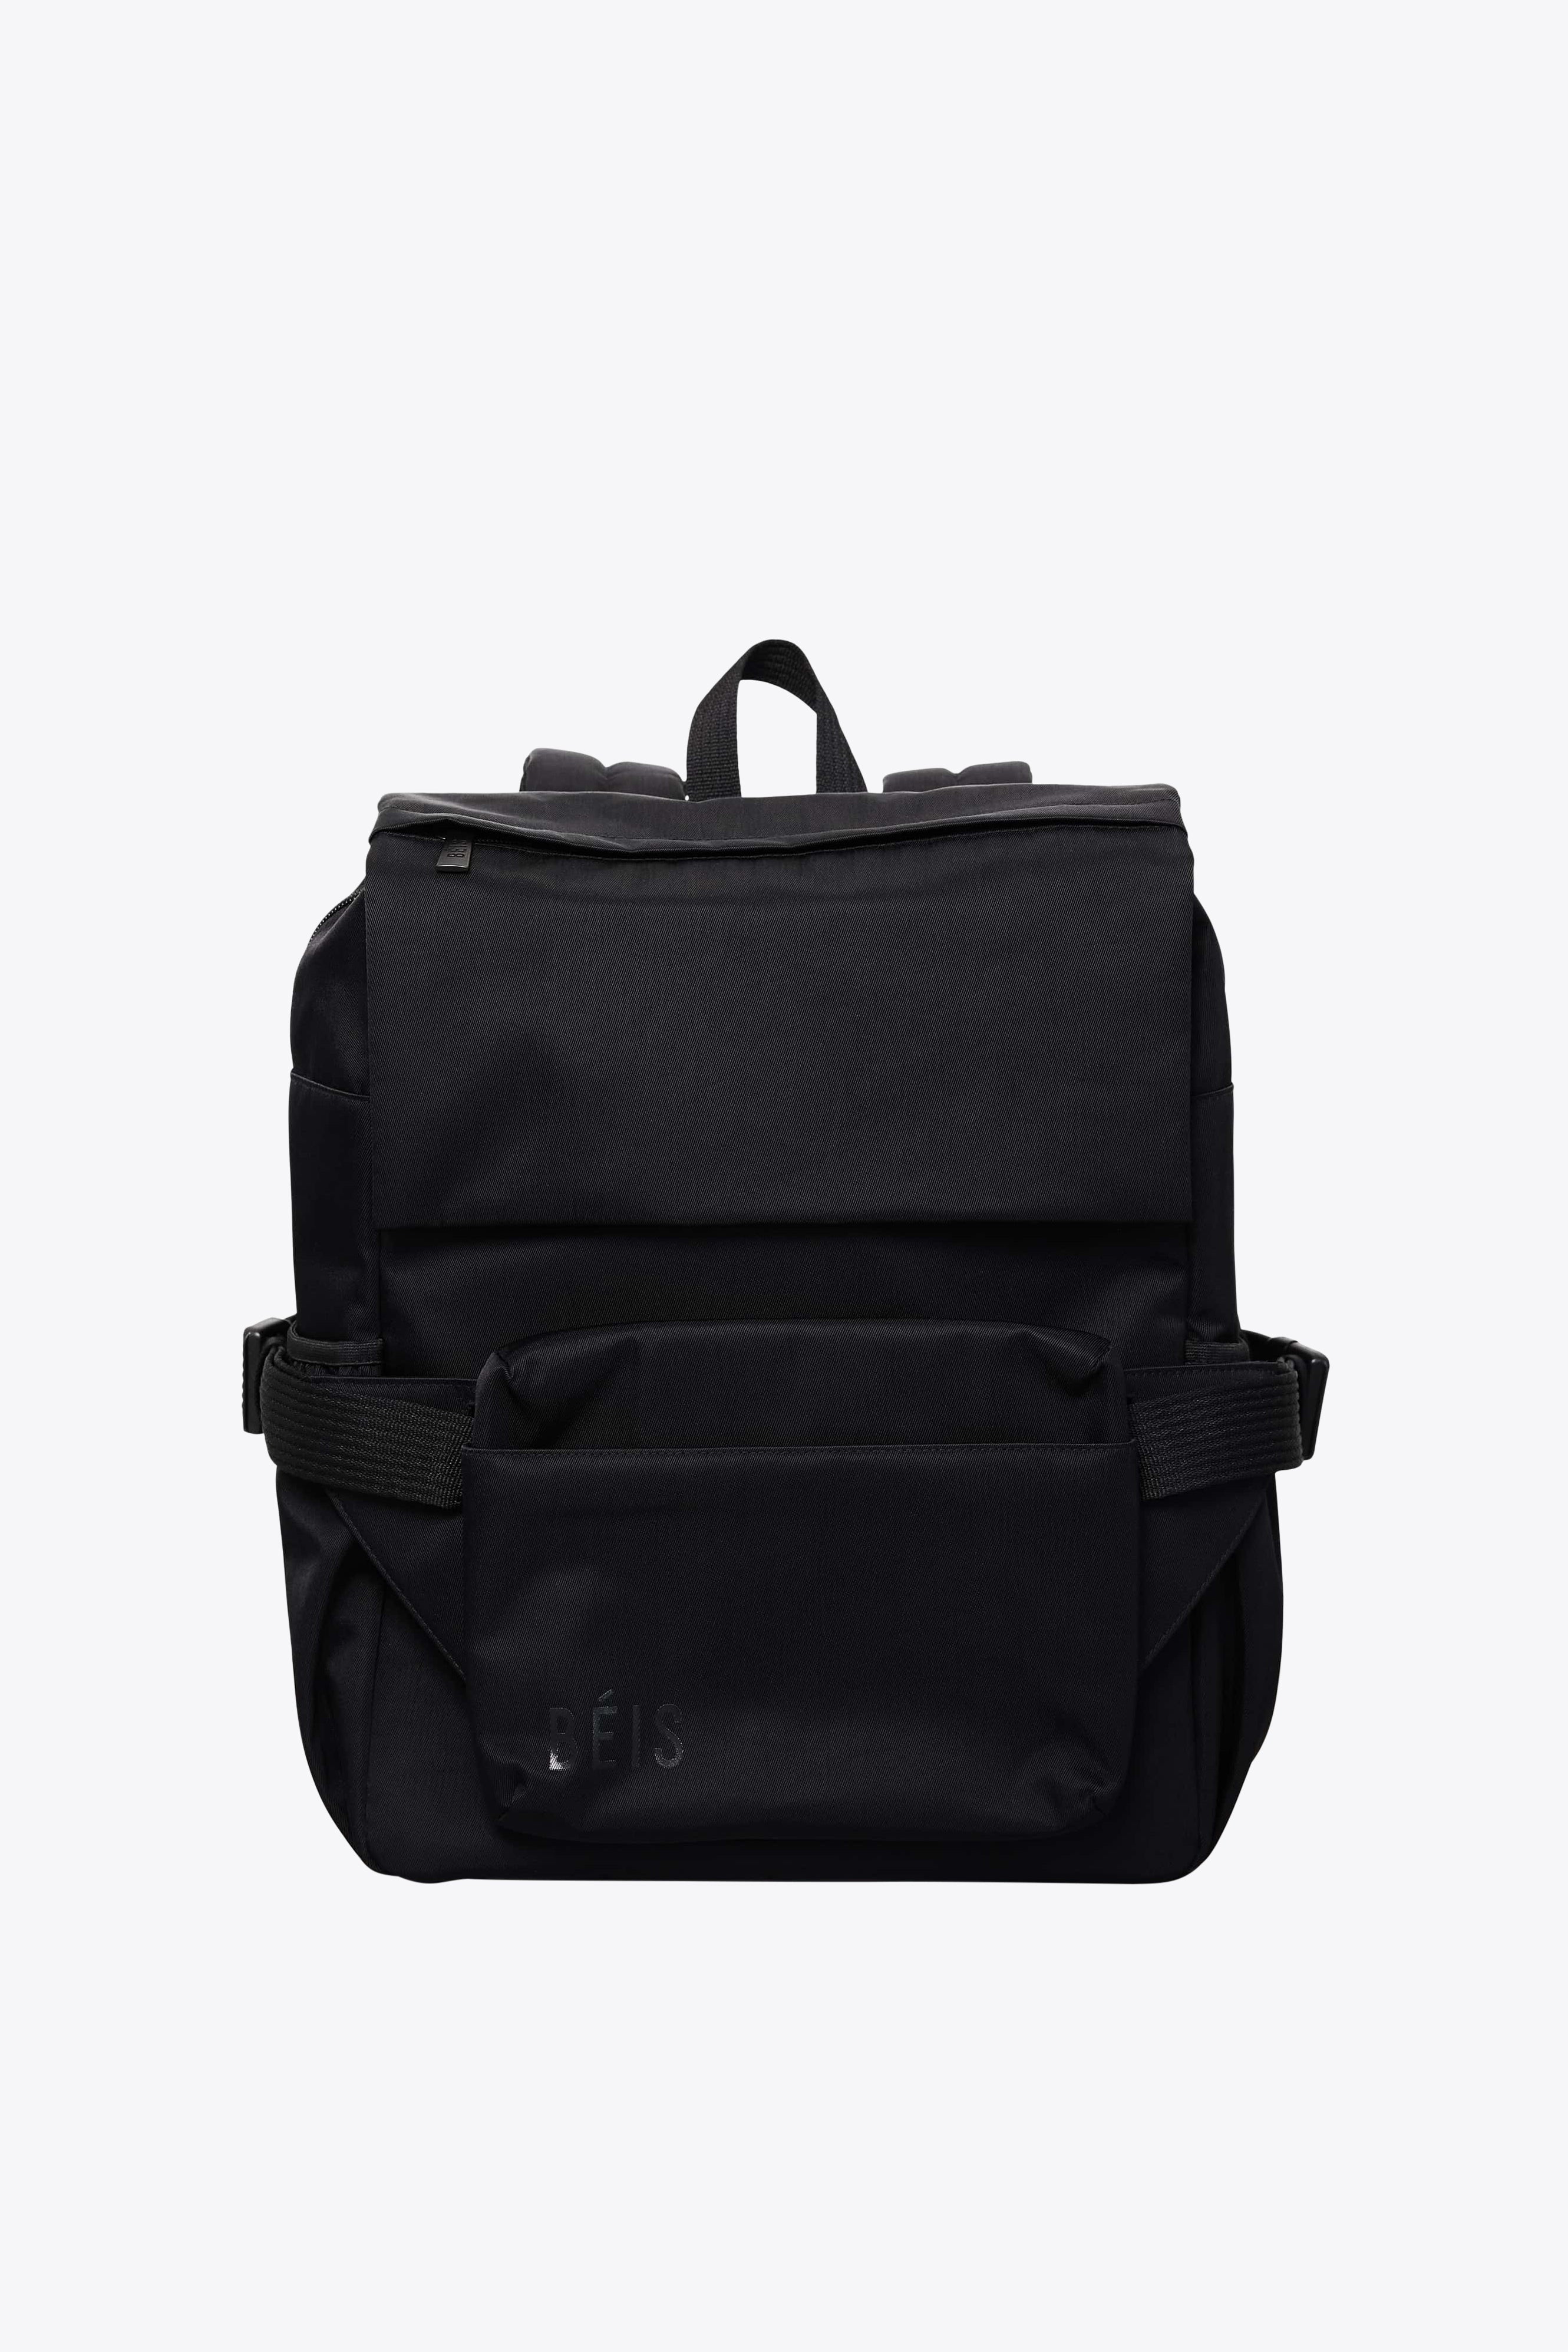 Stuff' Black Plush Large Duffle Bag